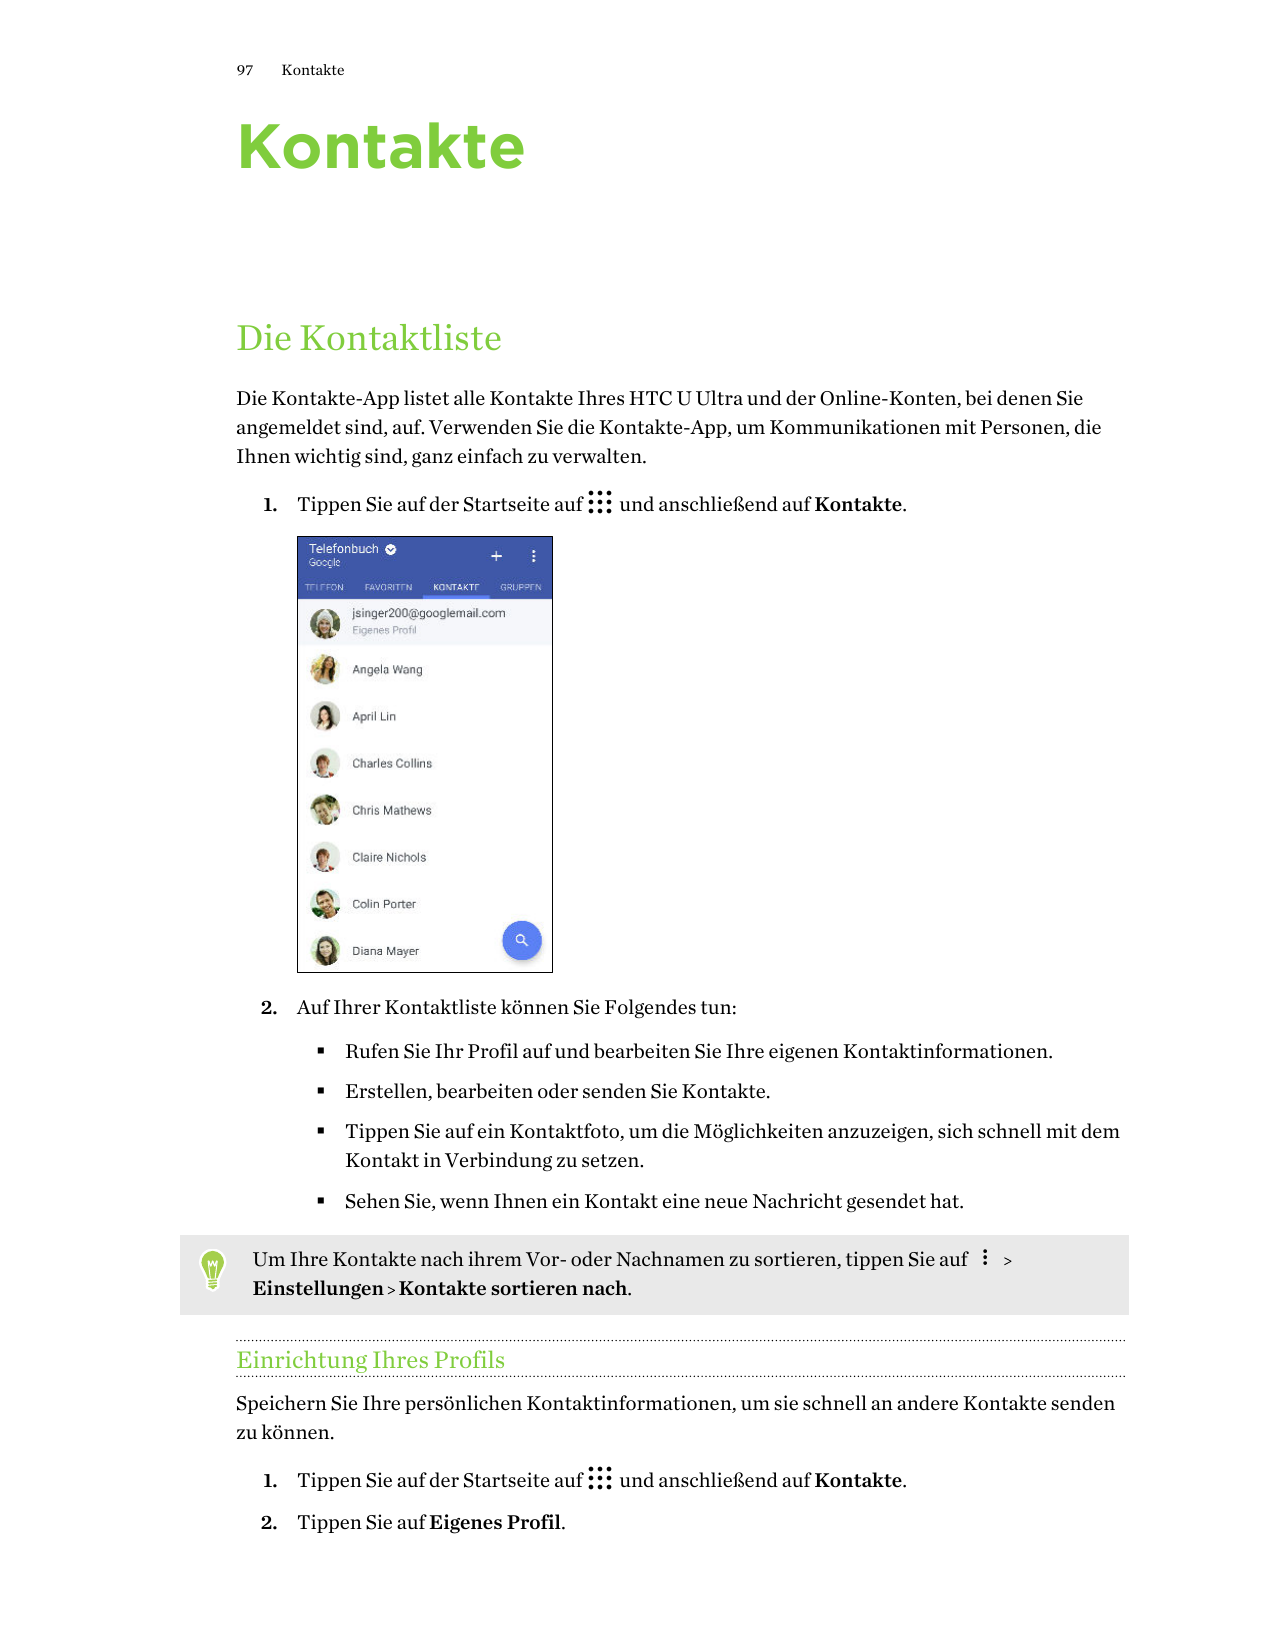 97KontakteKontakteDie KontaktlisteDie Kontakte-App listet alle Kontakte Ihres HTC U Ultra und der Online-Konten, bei denen Siean